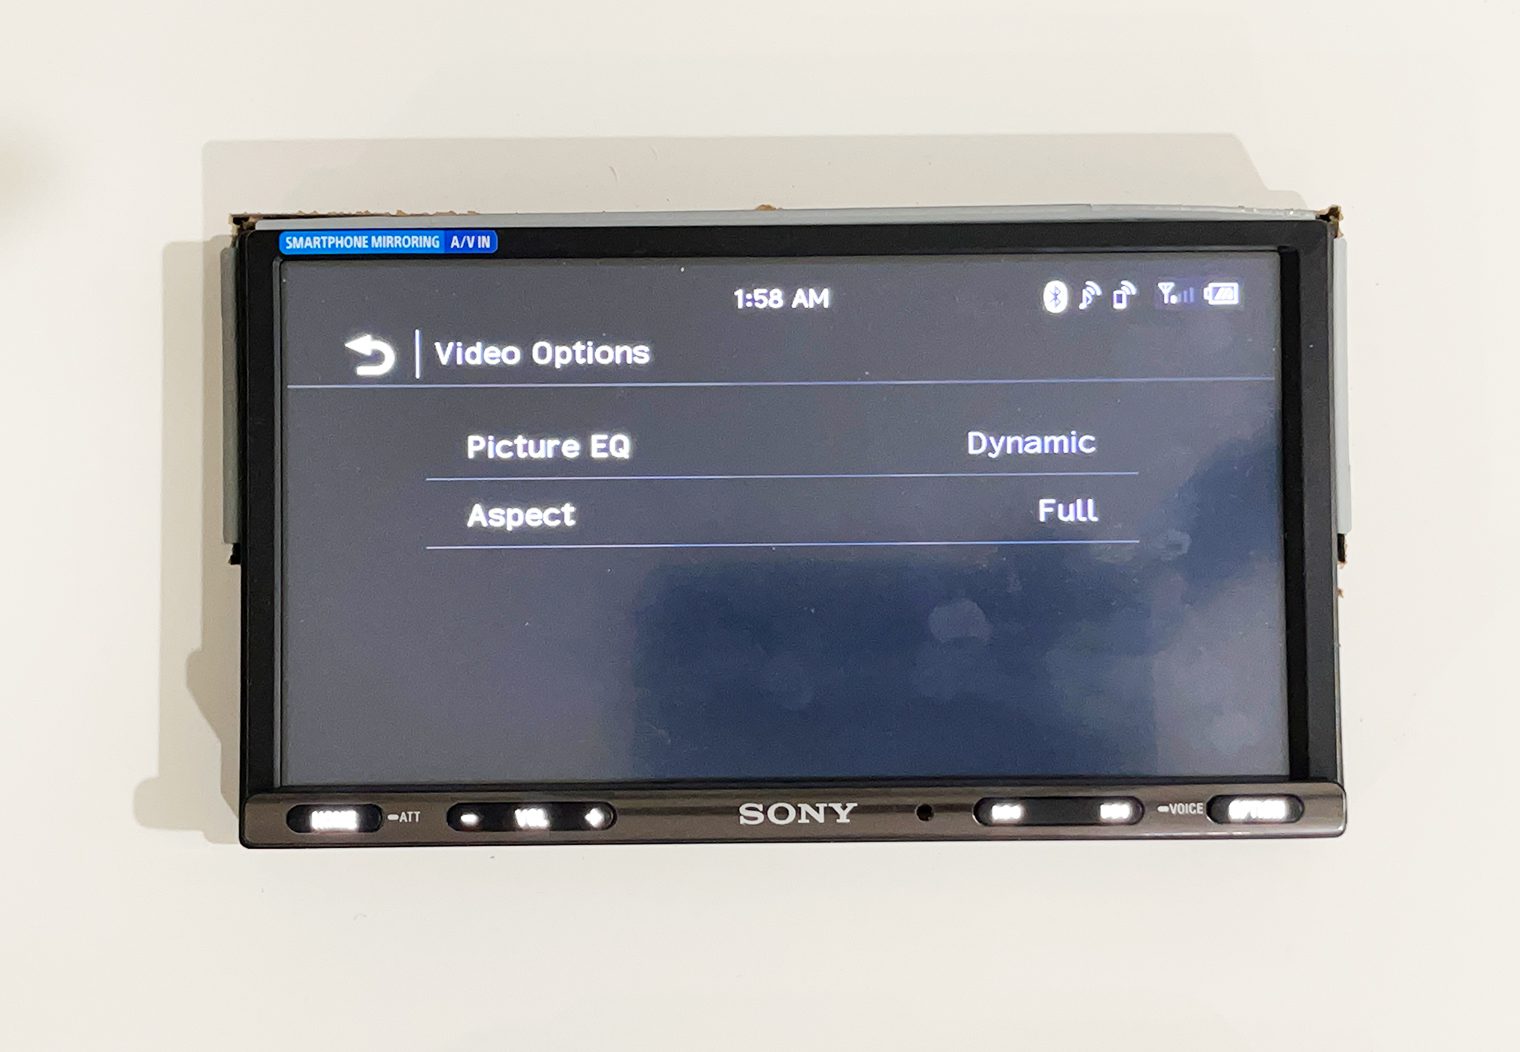 Sony XAV-AX3200 video image settings